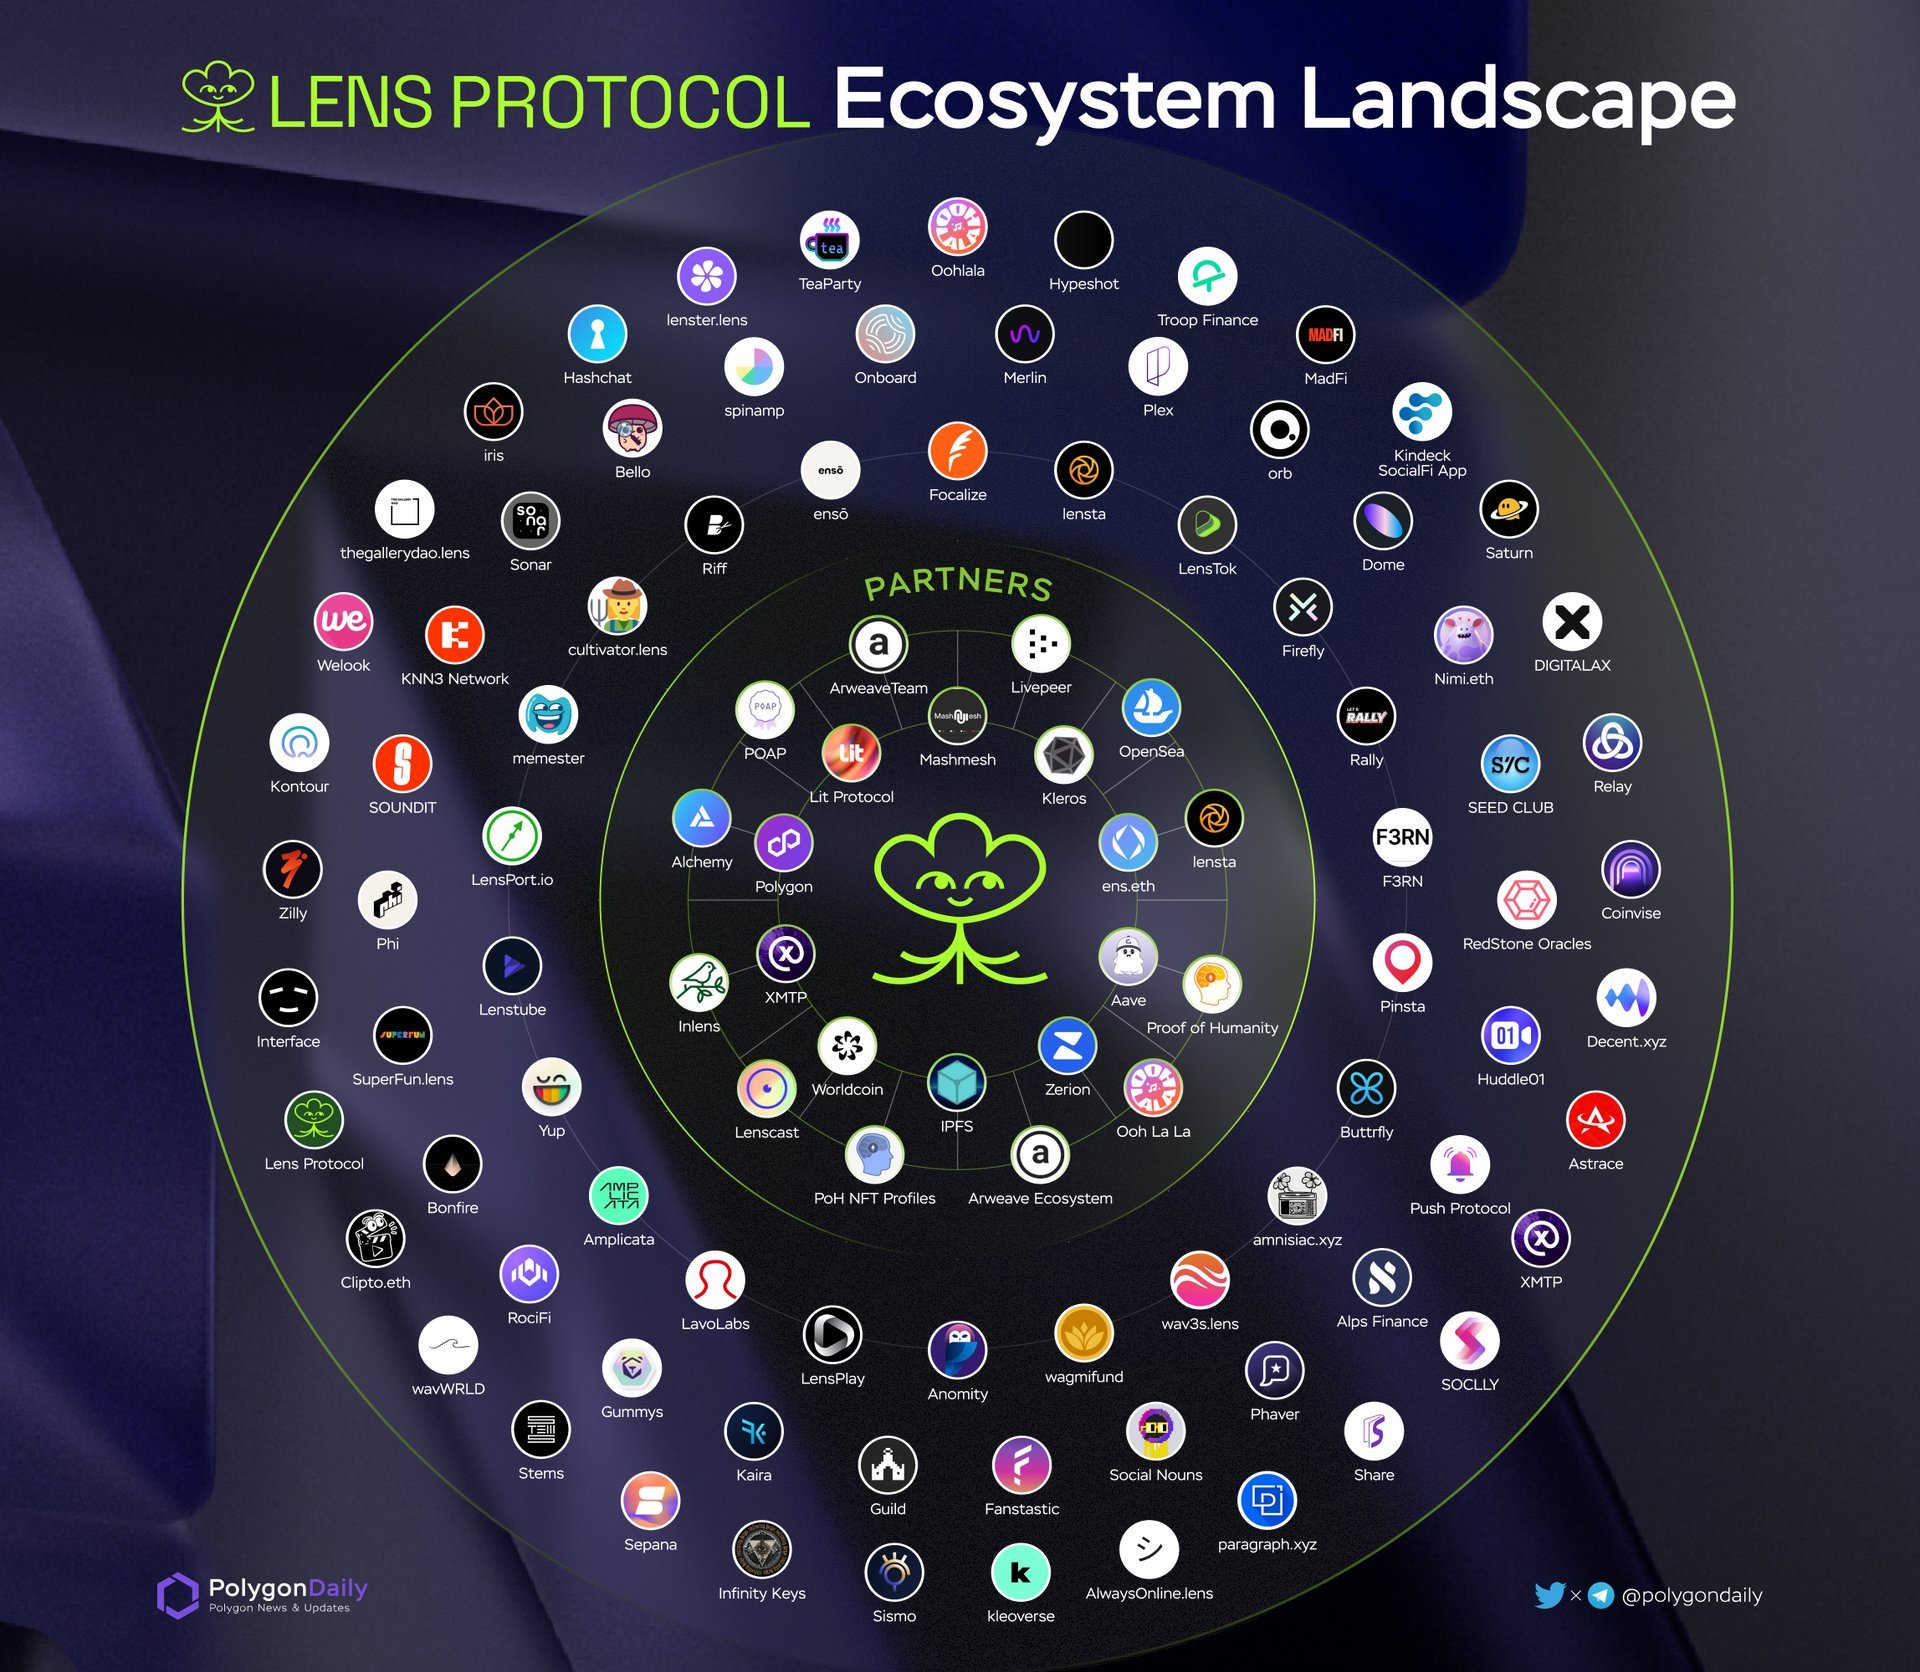 Écosystème Lens Protocol